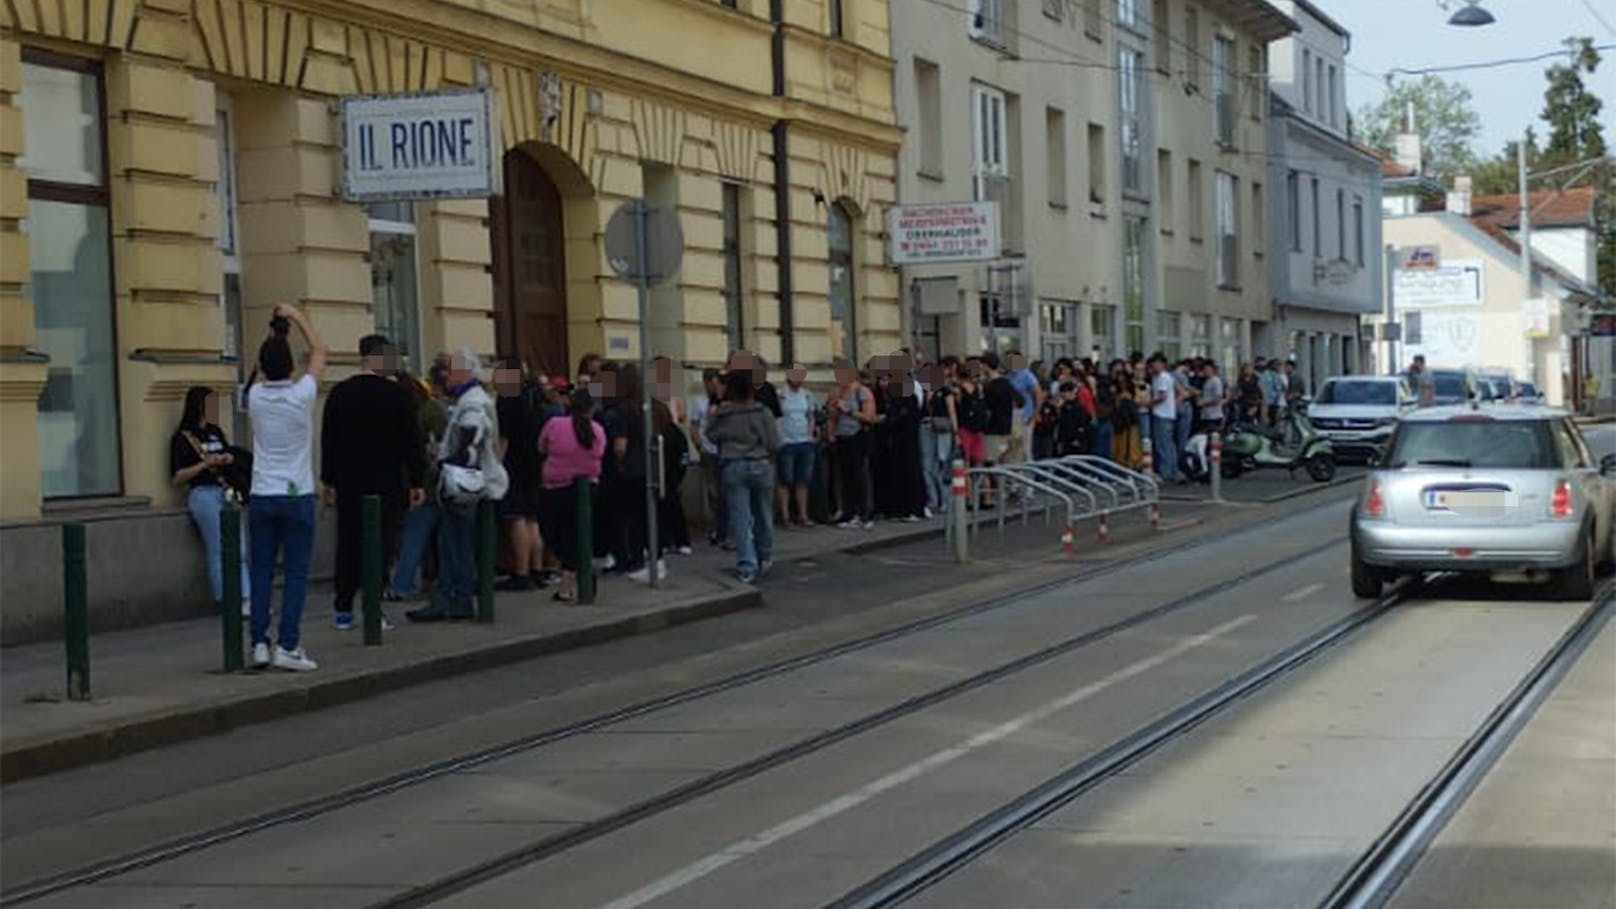 Gratis Pizza: Grätzl in Wien plötzlich voller Menschen